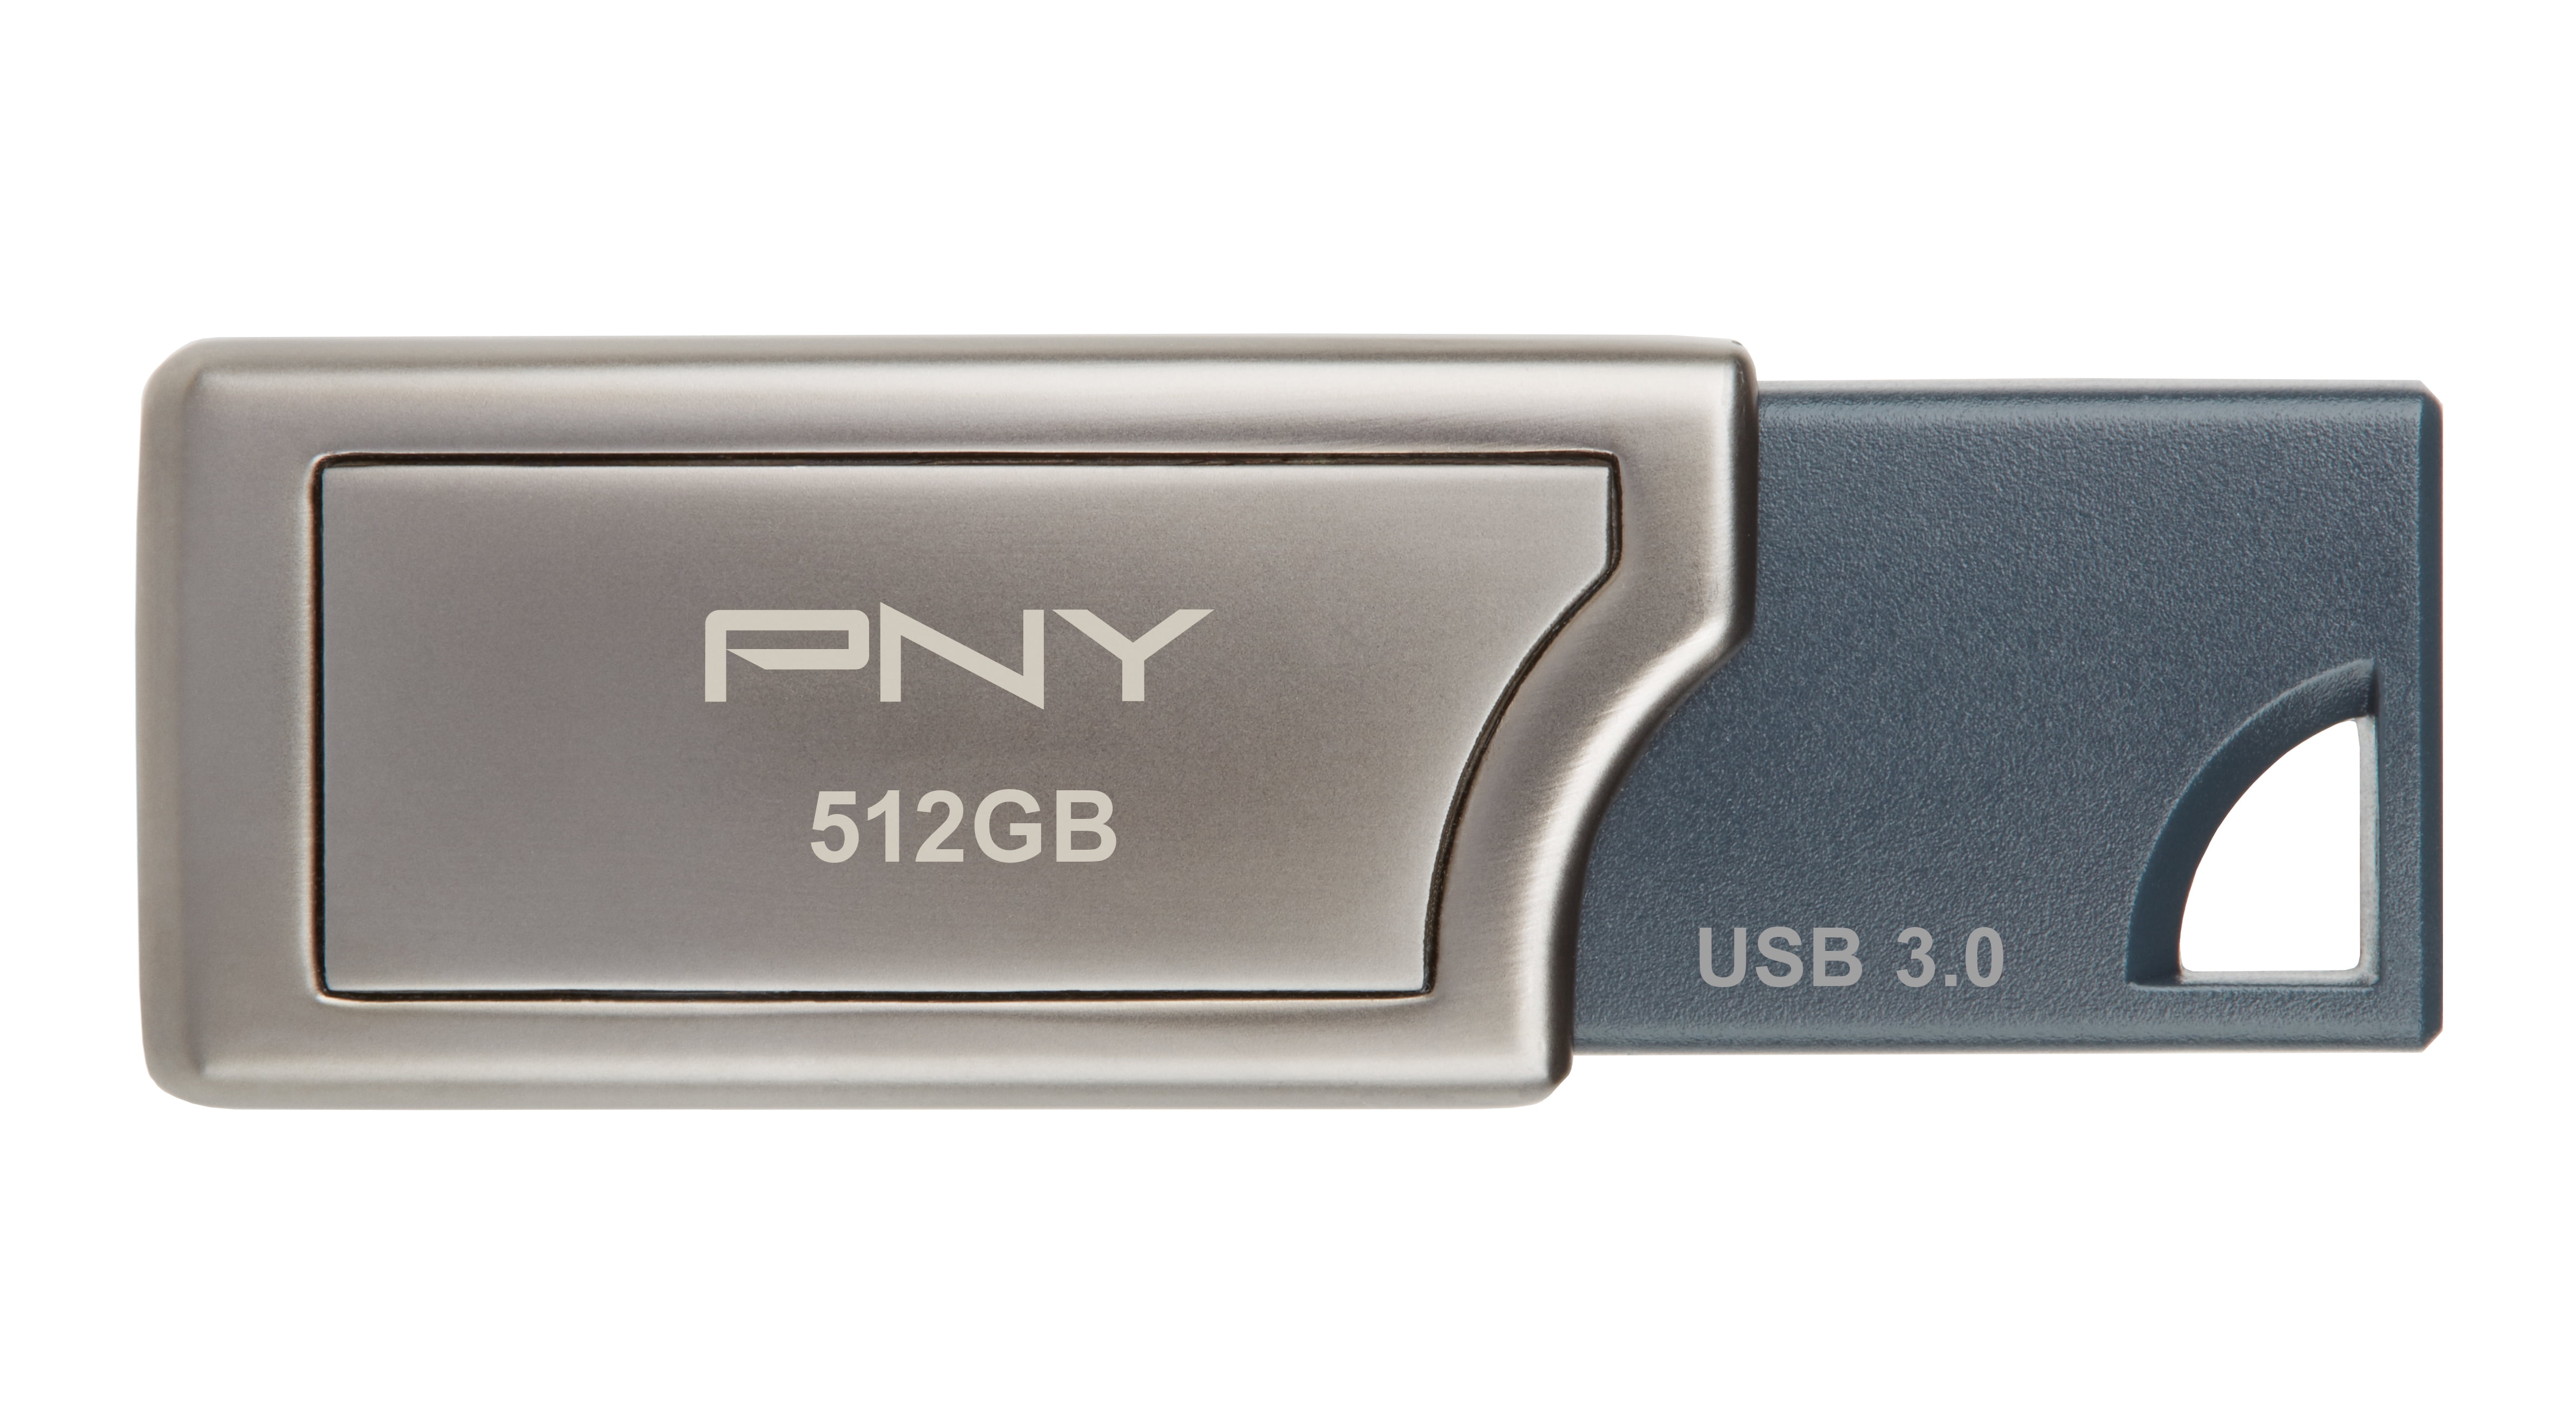 & 256GB Turbo Attaché 3 USB 3.0 Flash Drive - Grey Read Speeds Upto 400MB/S PNY Pro Elite 512GB USB 3.0 Flash Drive P-FD256TBOP-GE P-FD512PRO-GE 